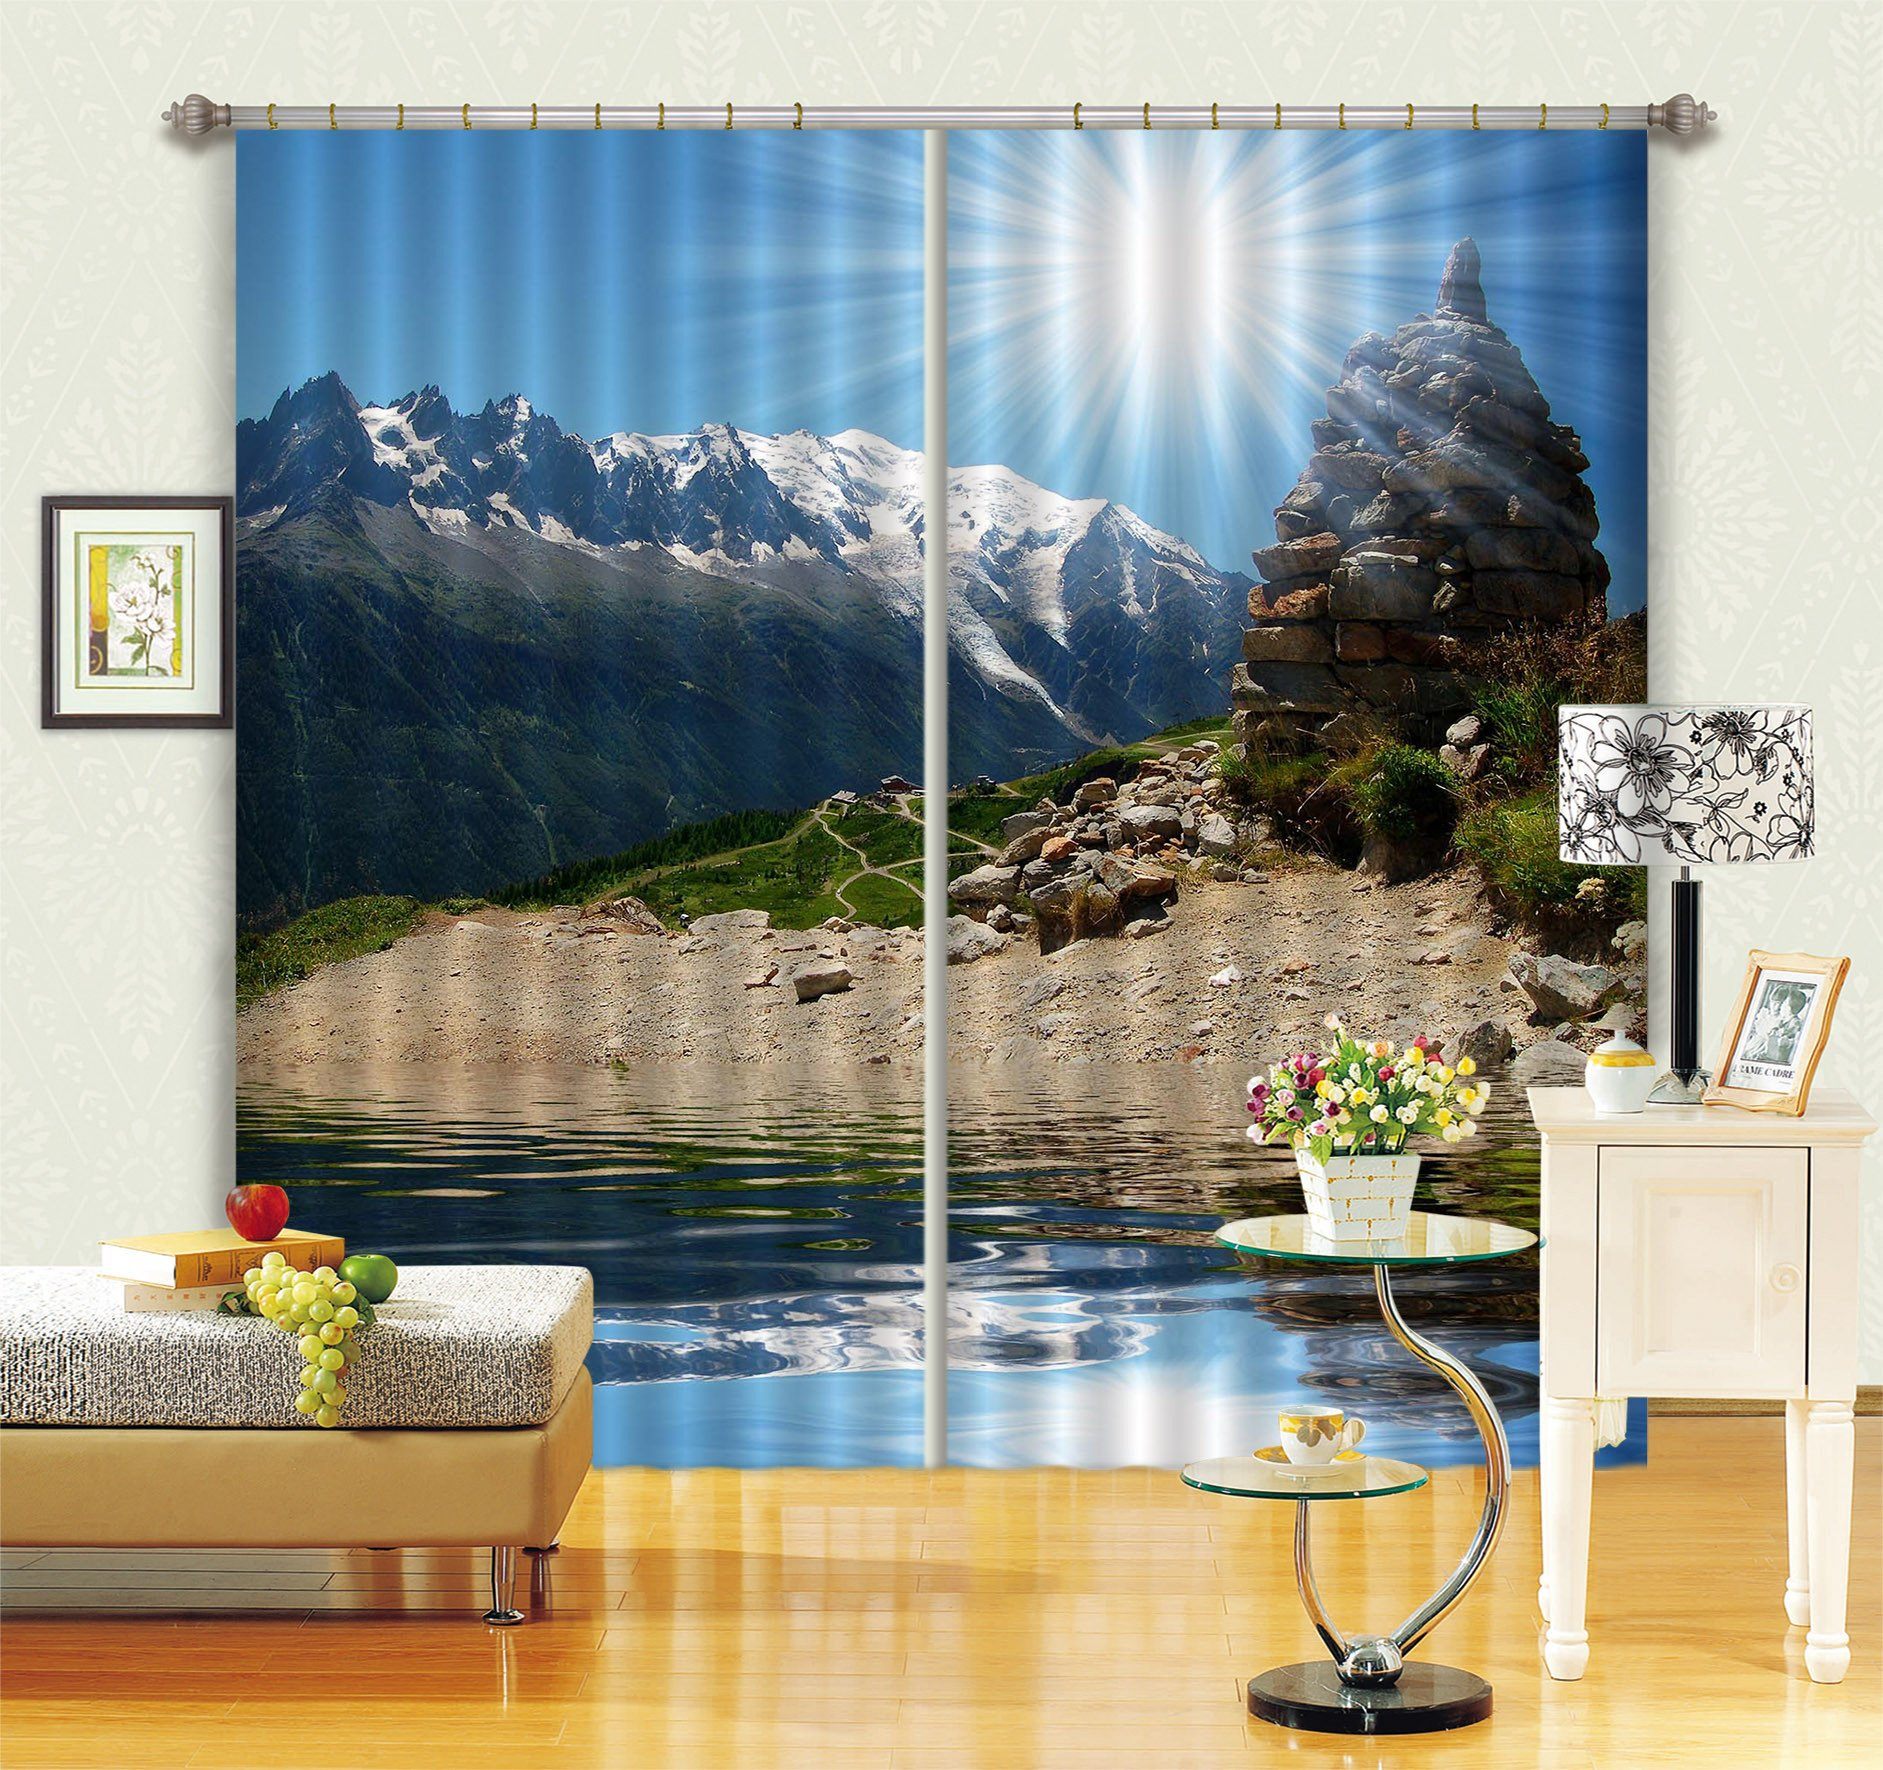 3D Snow Mountain Lake Curtains Drapes Wallpaper AJ Wallpaper 